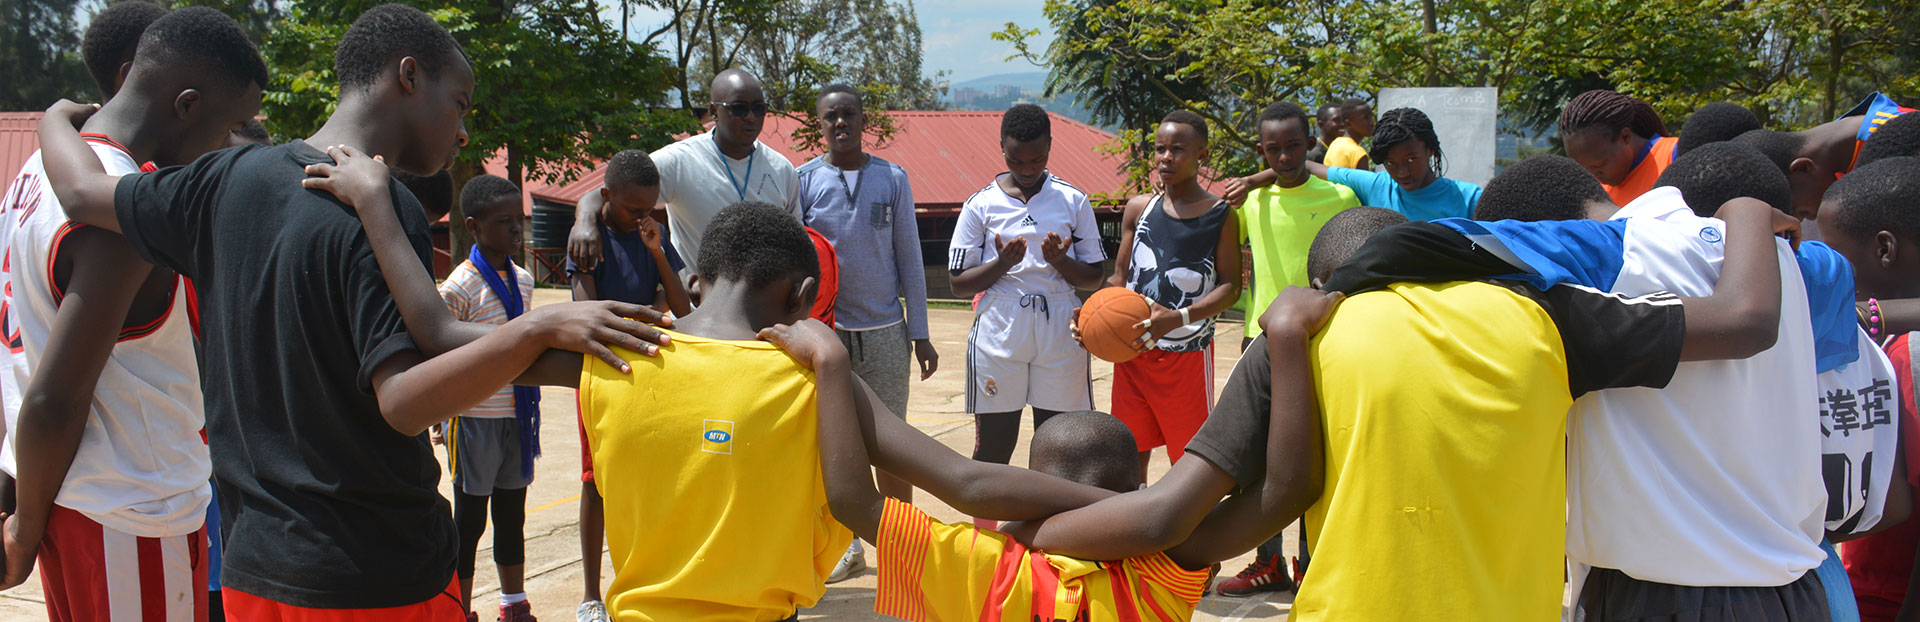 Ruanda: continúa la conversión